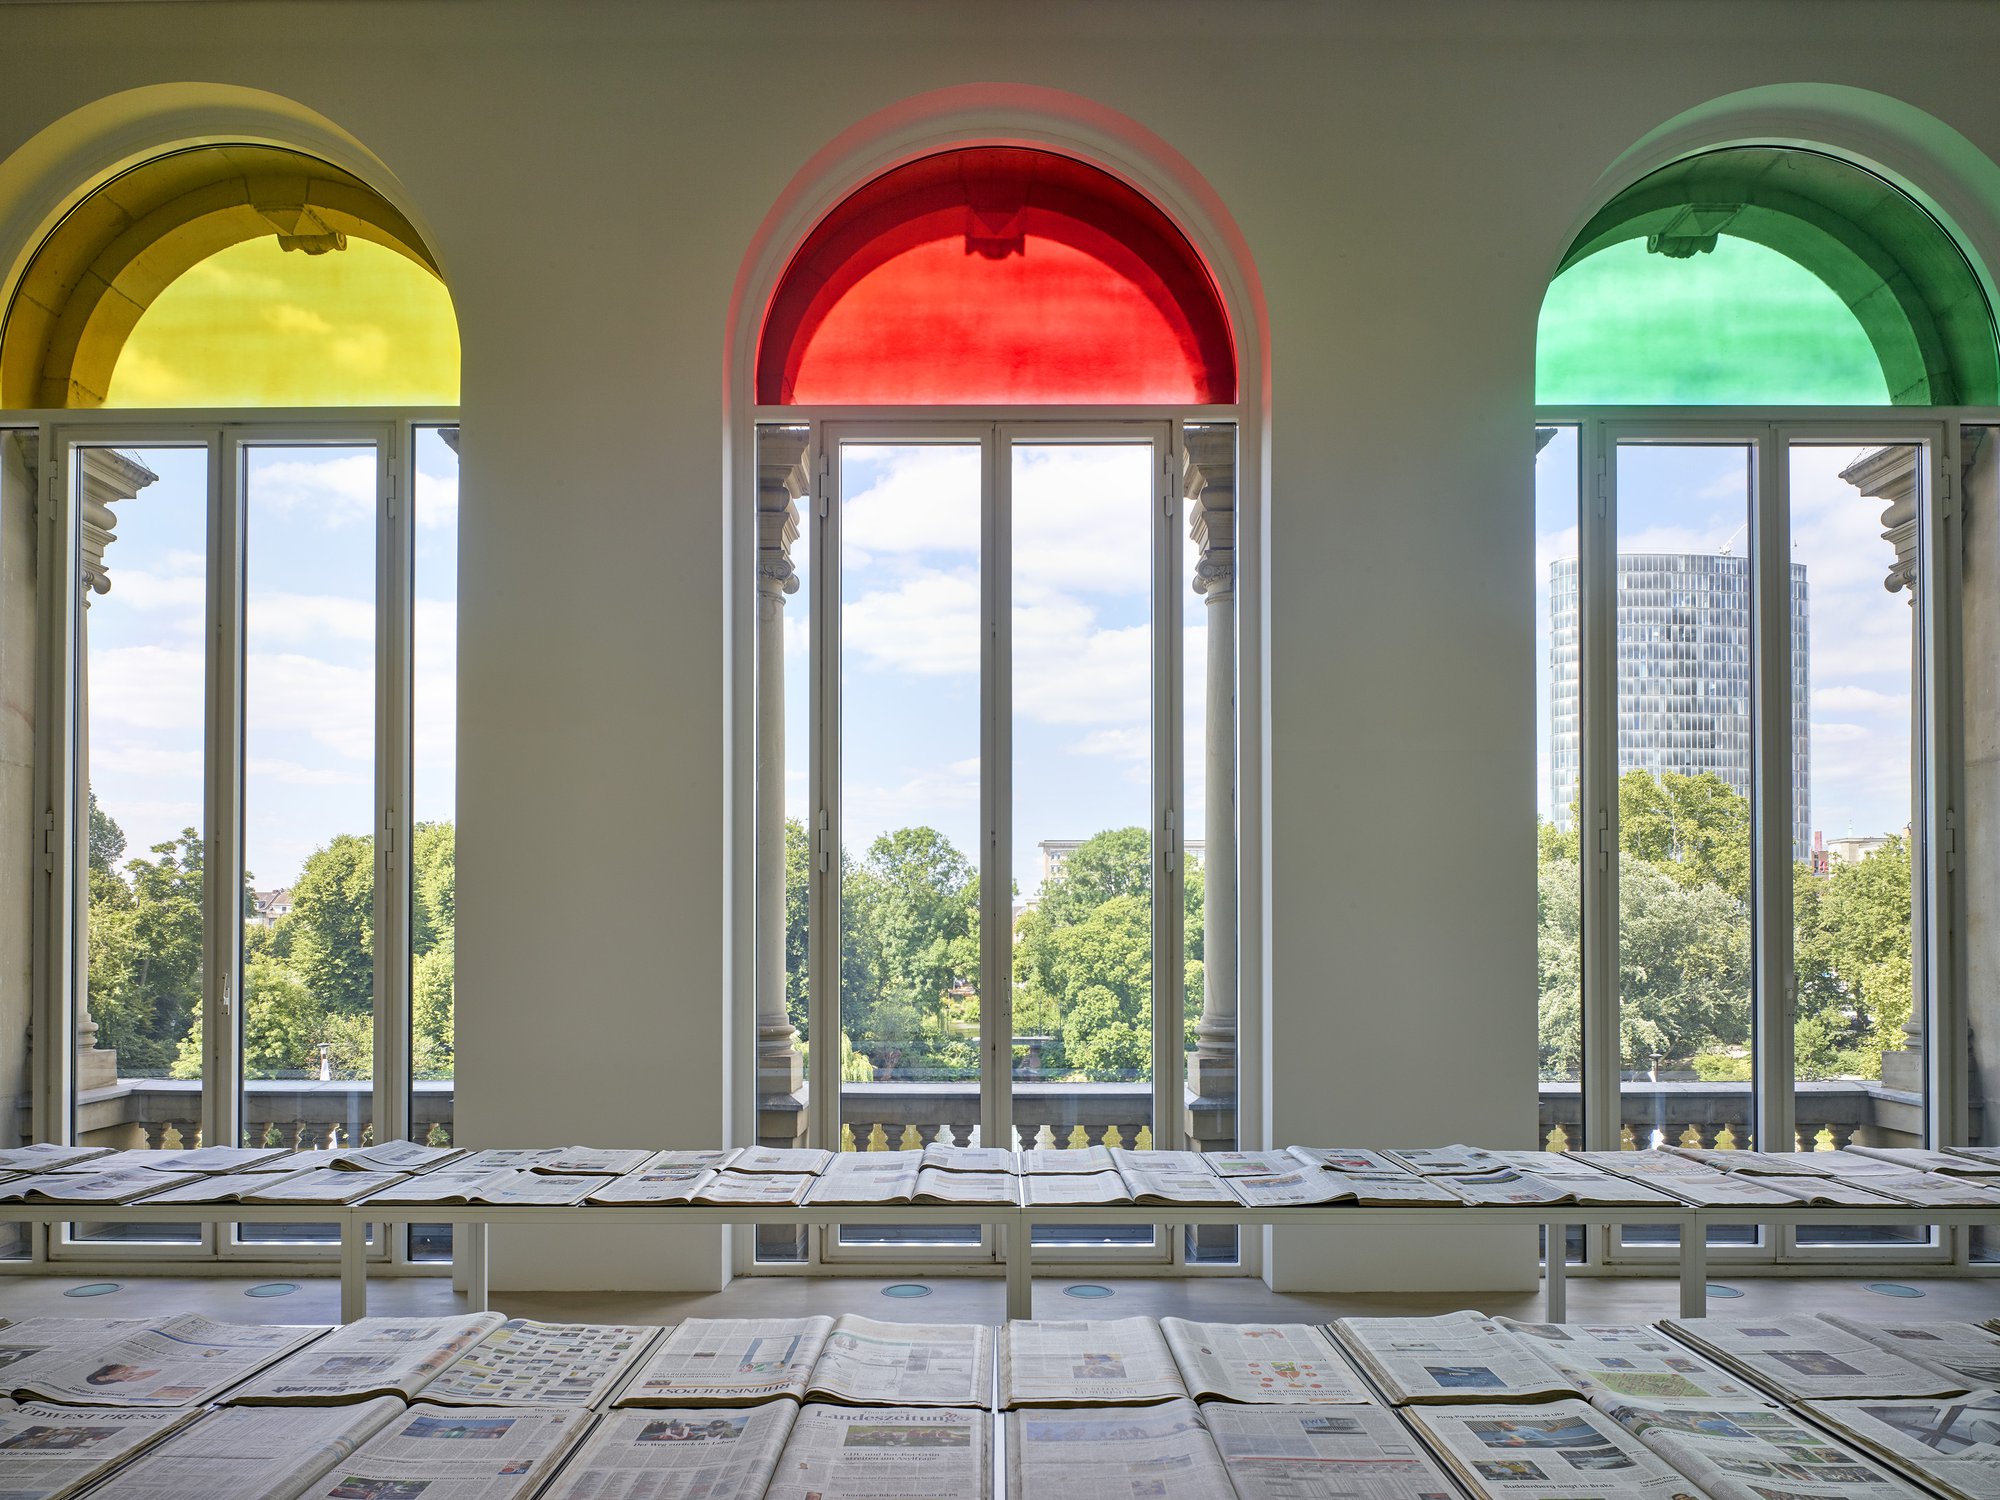 Installation view, Banu Cennetoğlu, Banu Cennetoğlu, K21 Ständehaus, Kunstsammlung Nordrhein-Westfalen, Düsseldorf, 2019